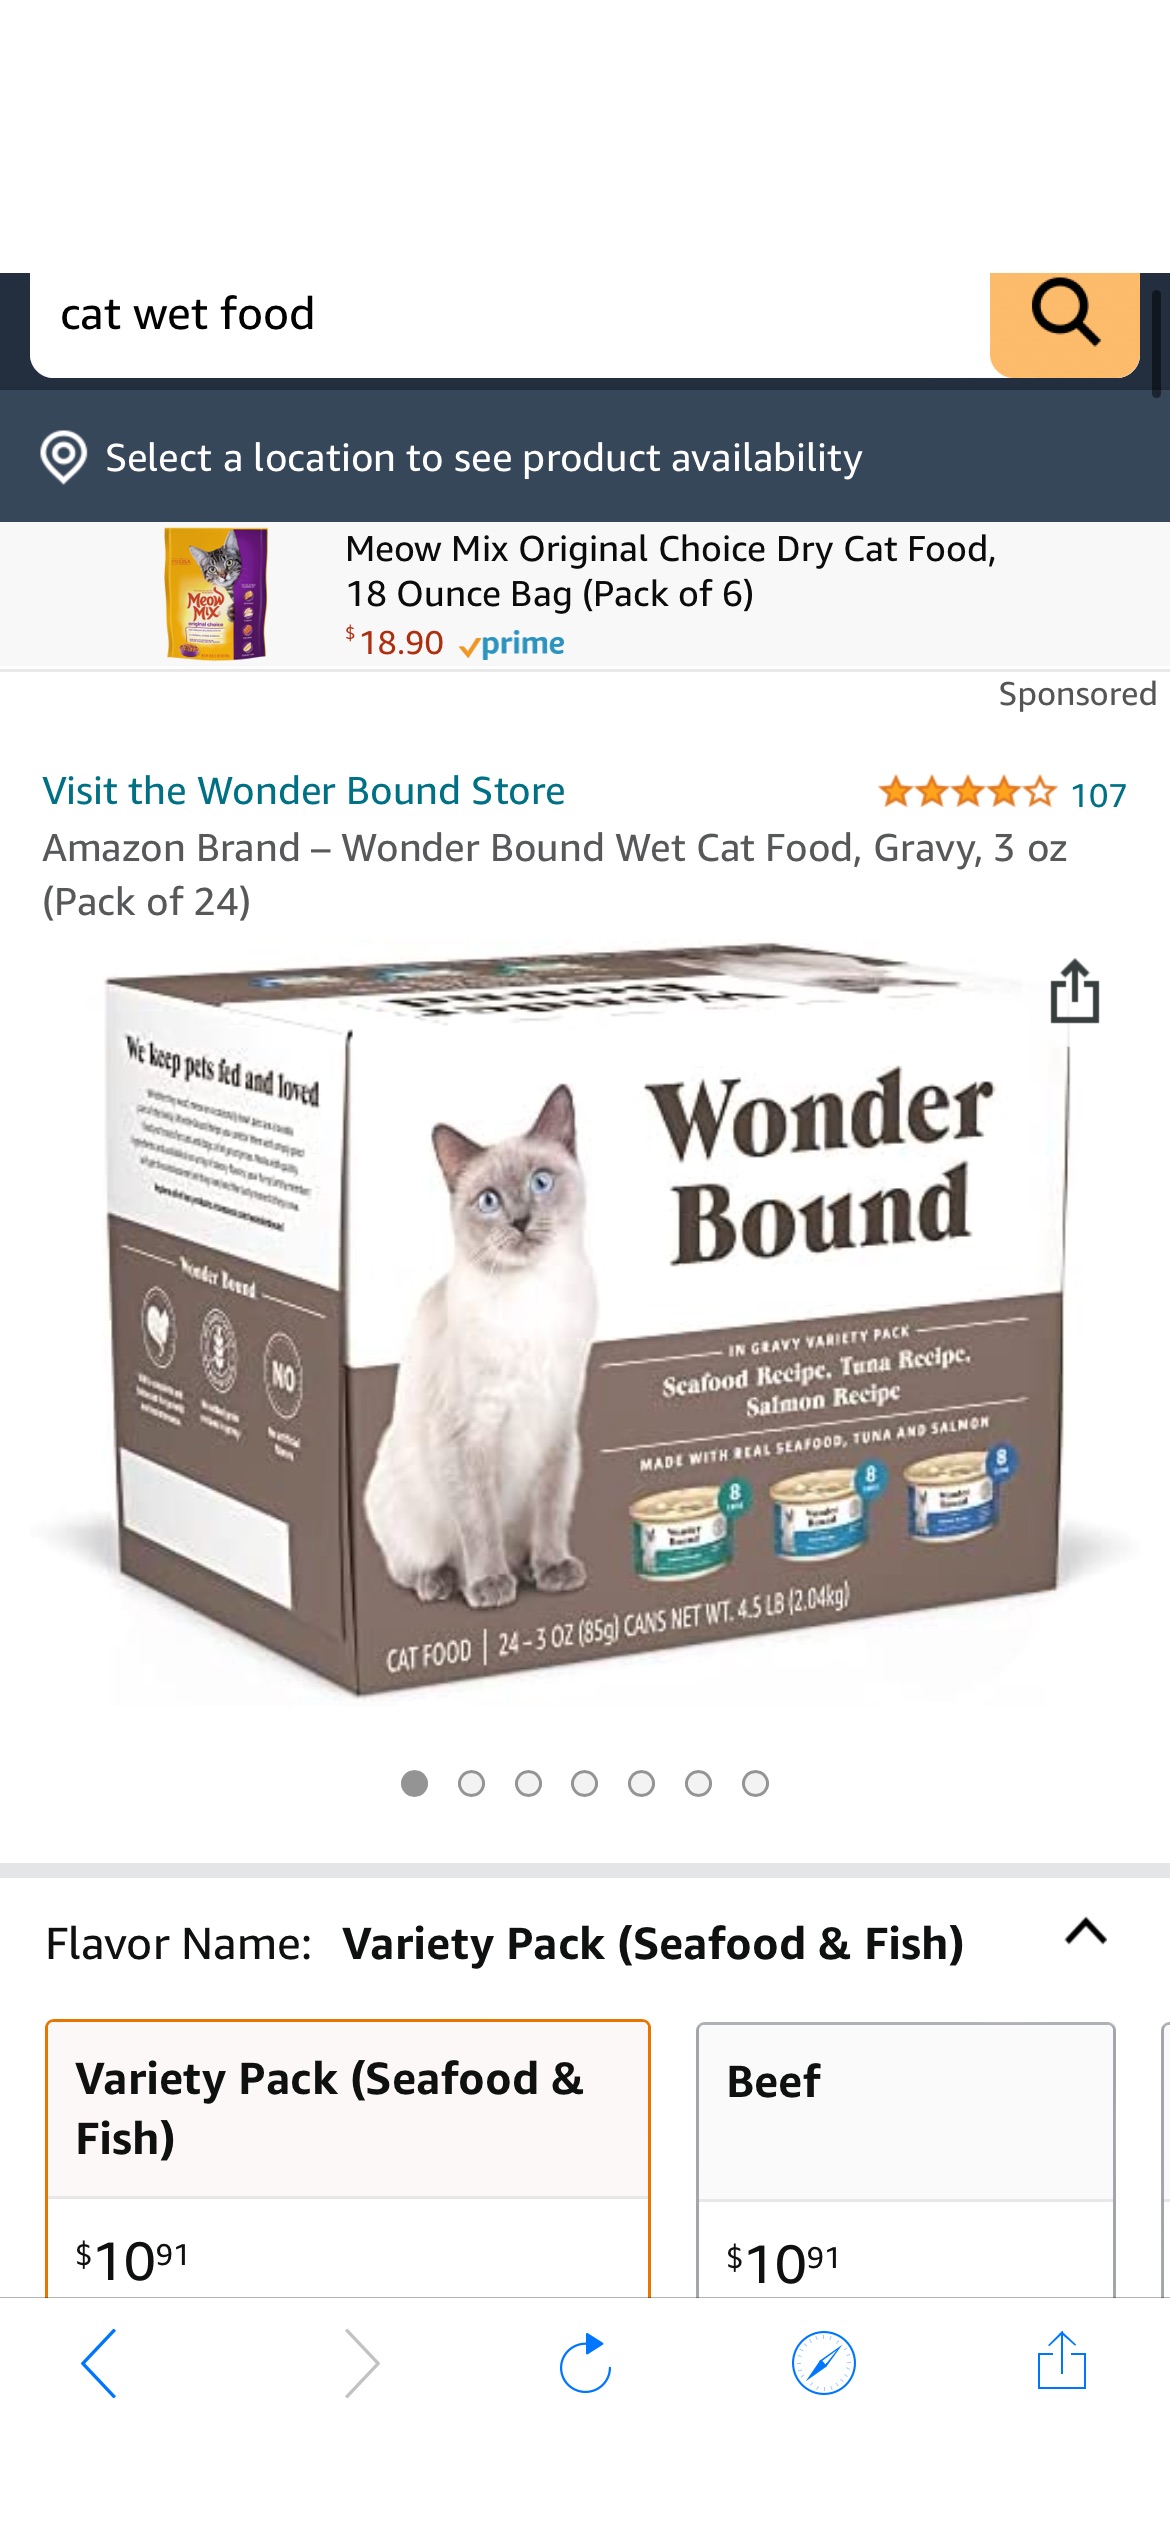 7折优惠。Amazon Brand 自营品牌 Wonder Bound 猫罐头3种味道24盒装(海鲜，吞拿鱼，三文鱼味) Wet Cat Food, Gravy (Seafood, Tuna, Salmon)